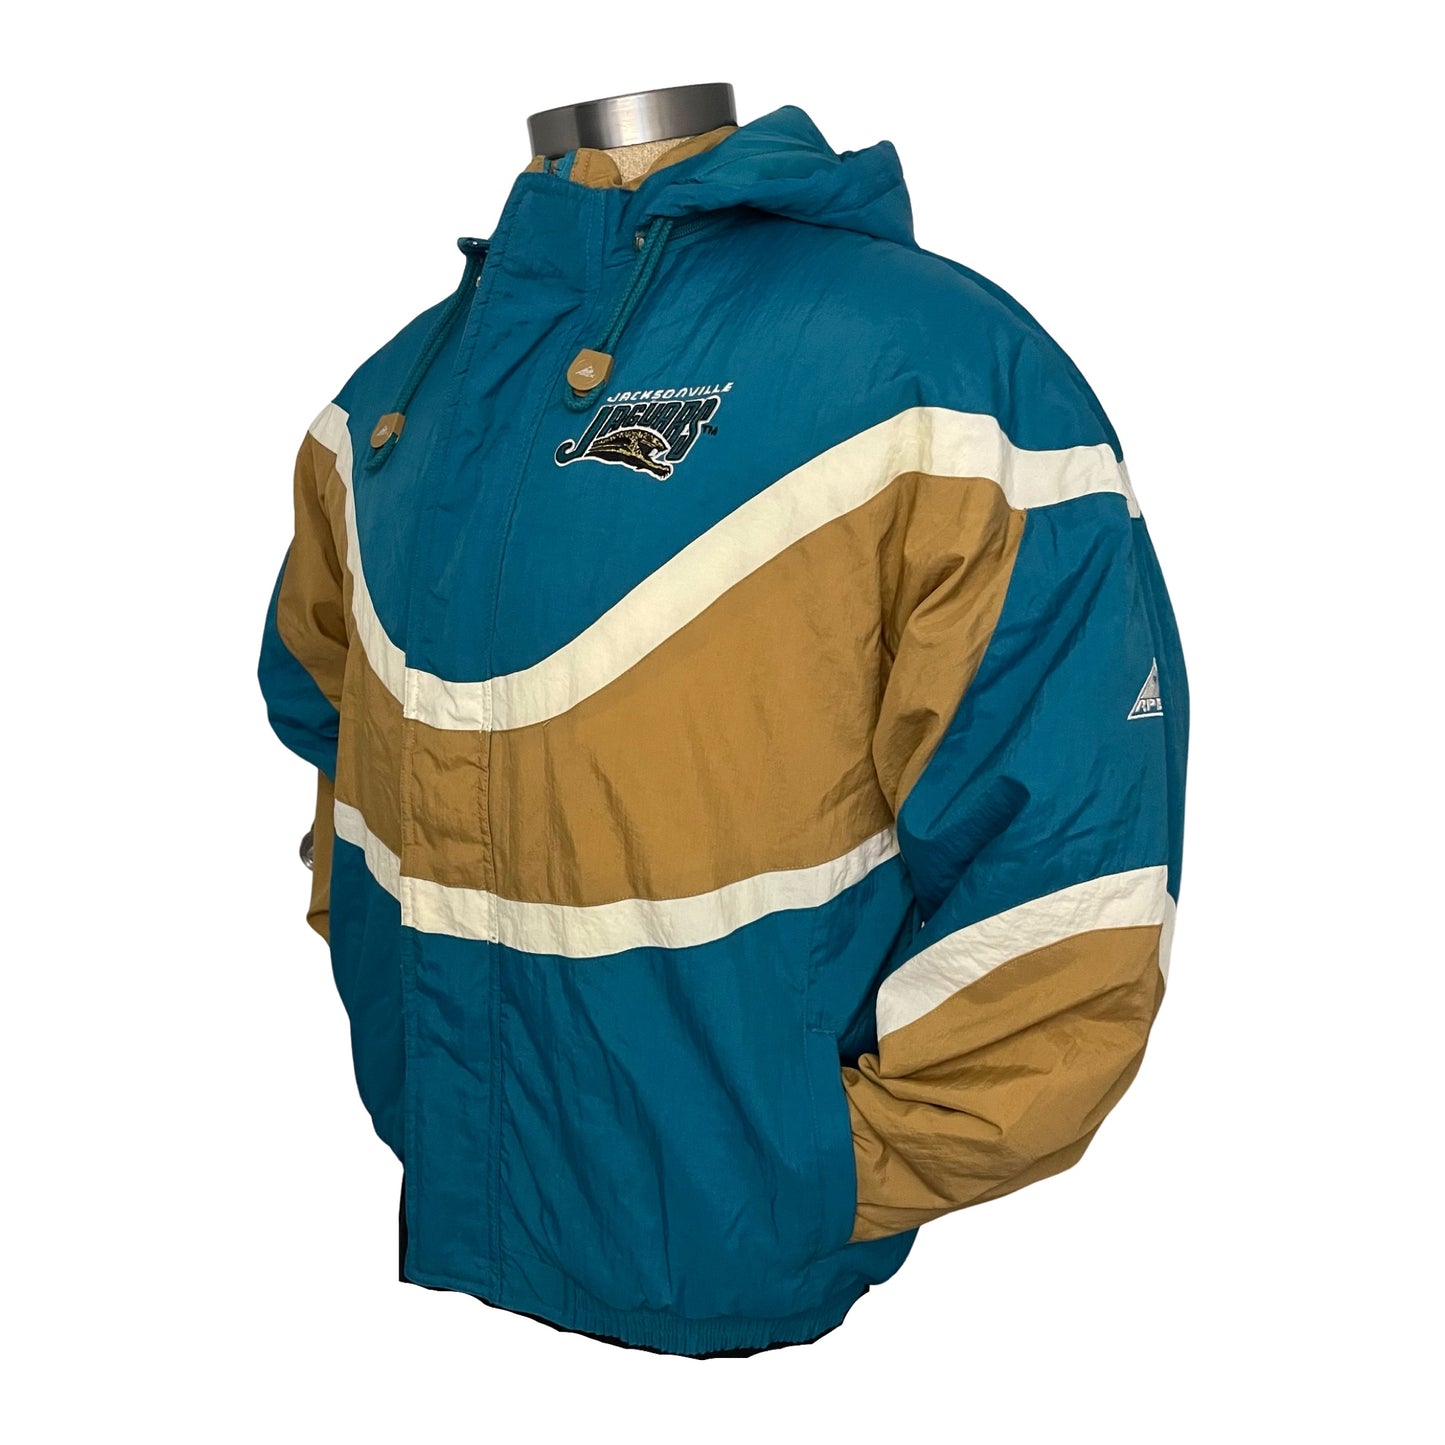 Vintage Jacksonville Jaguars APEX banned logo jacket size SMALL